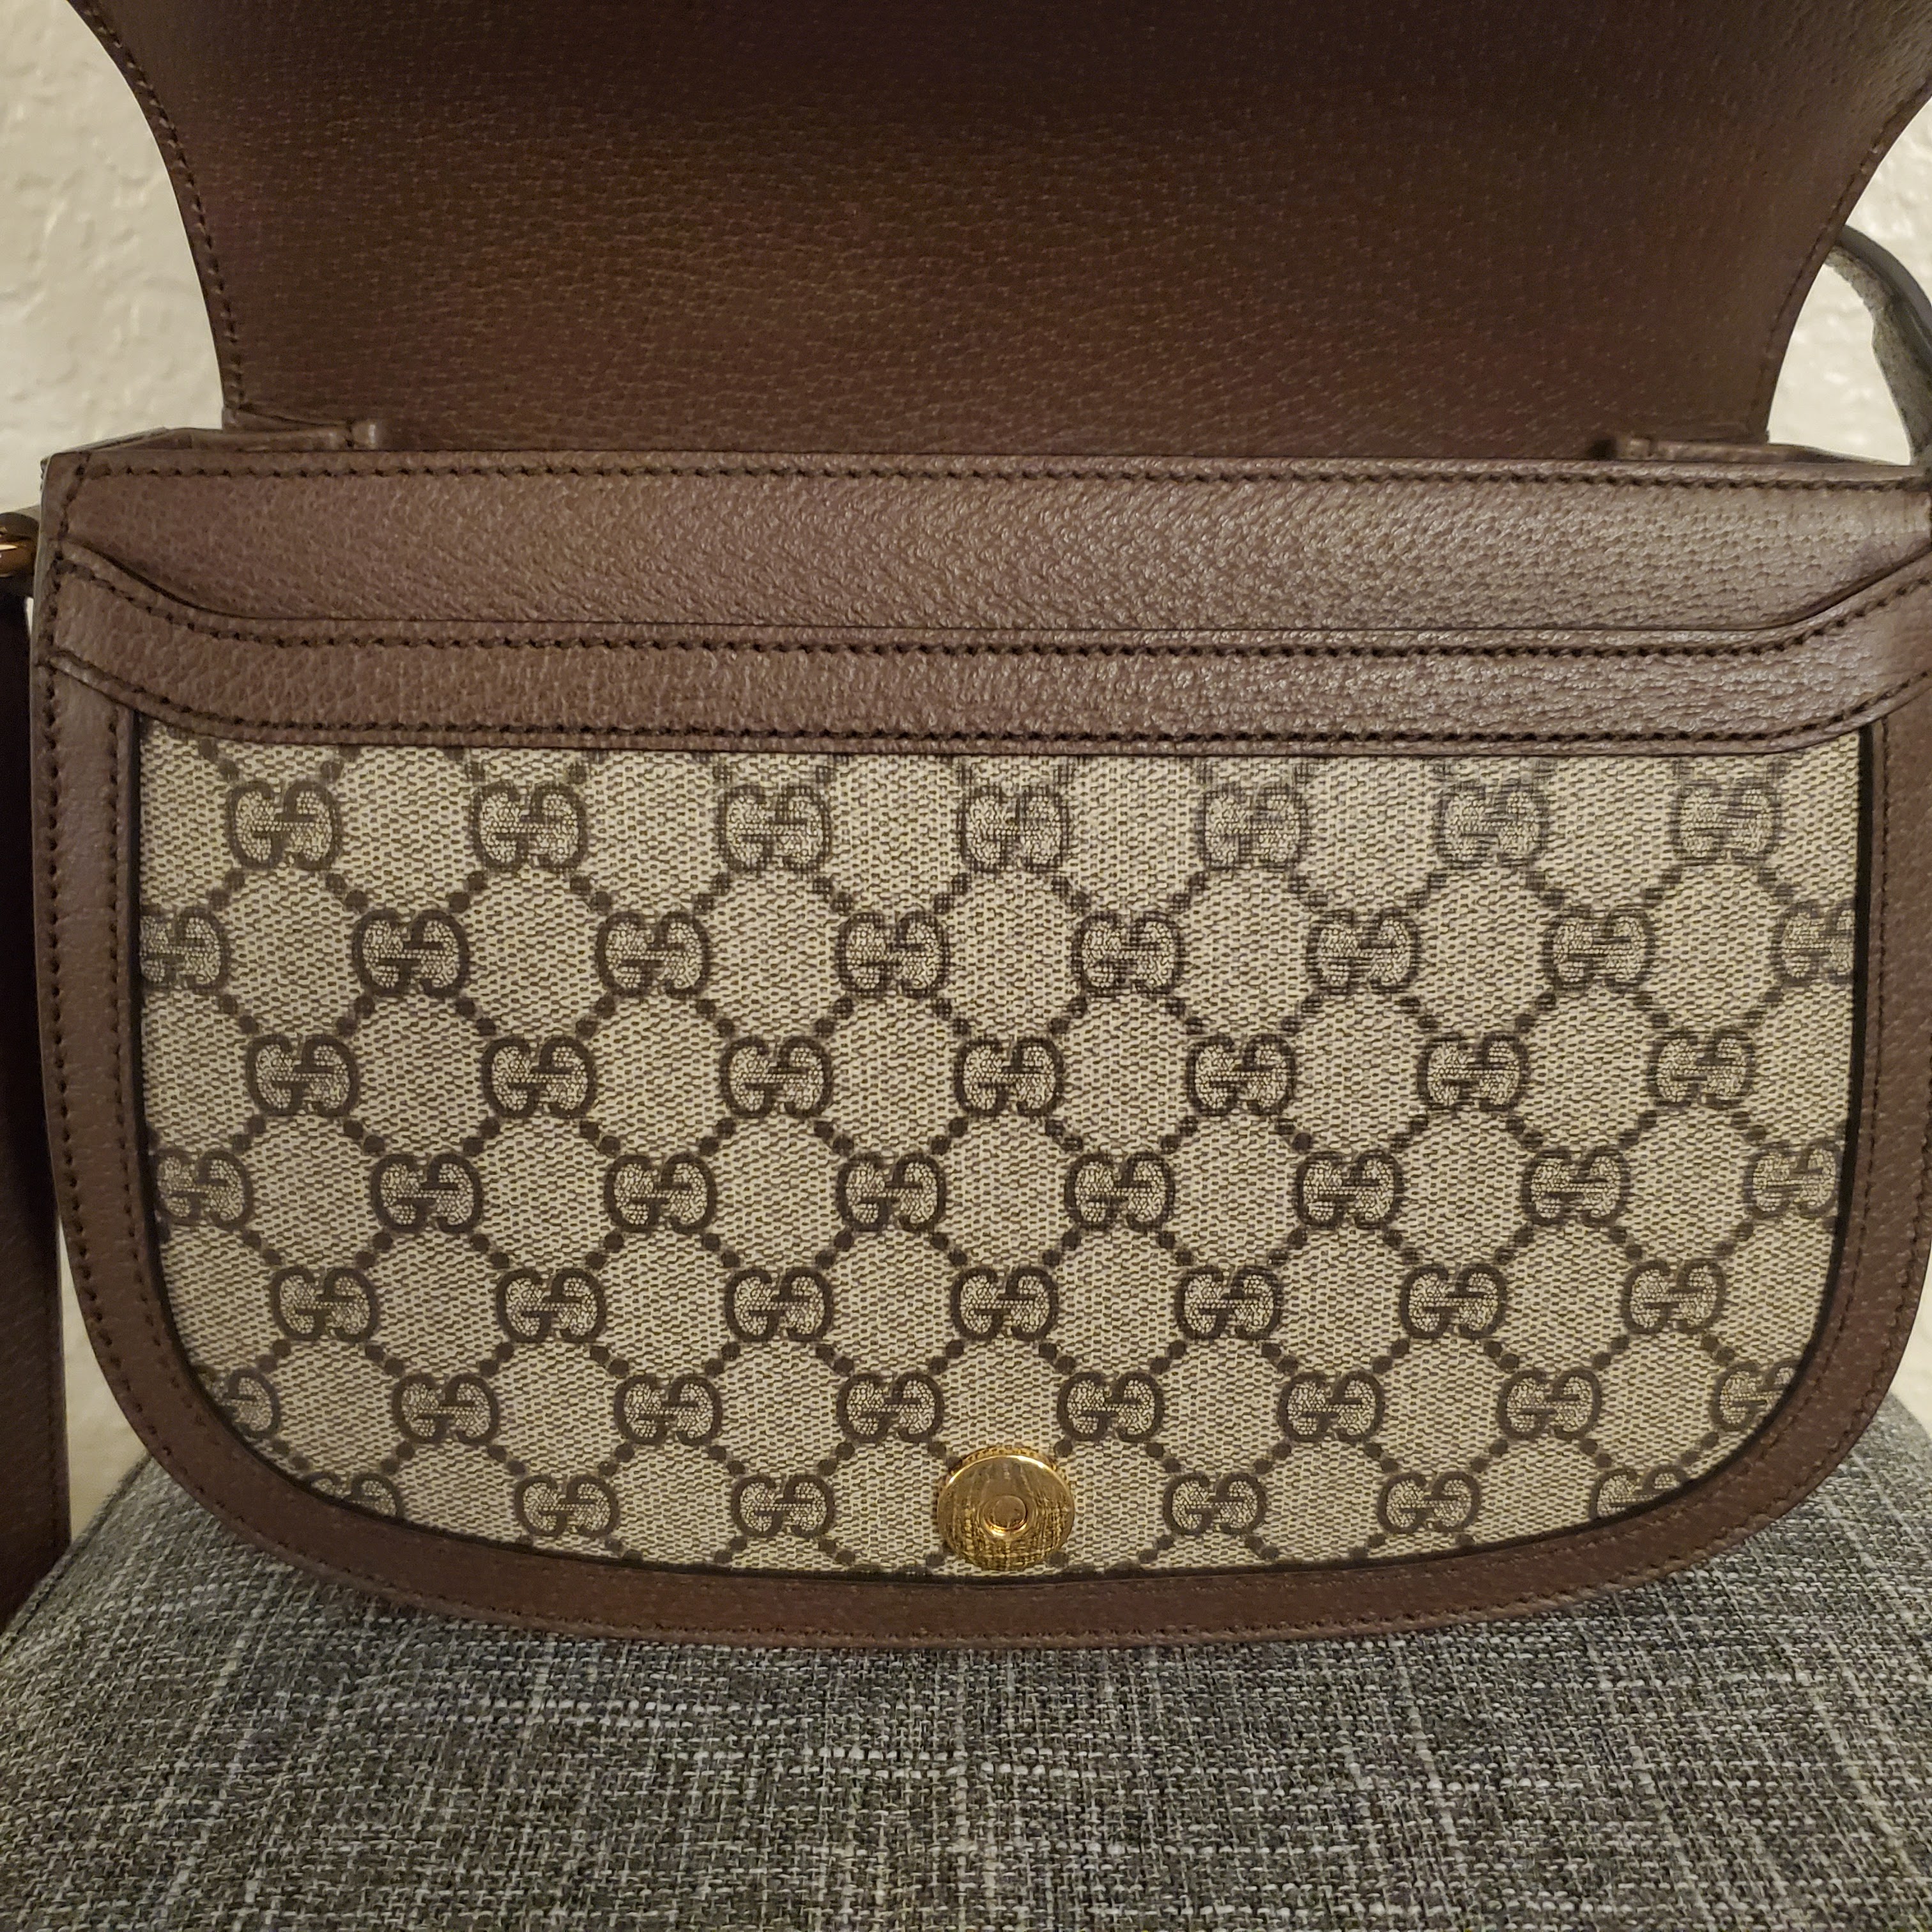 Purse Review: Ophidia GG Small Handbag 